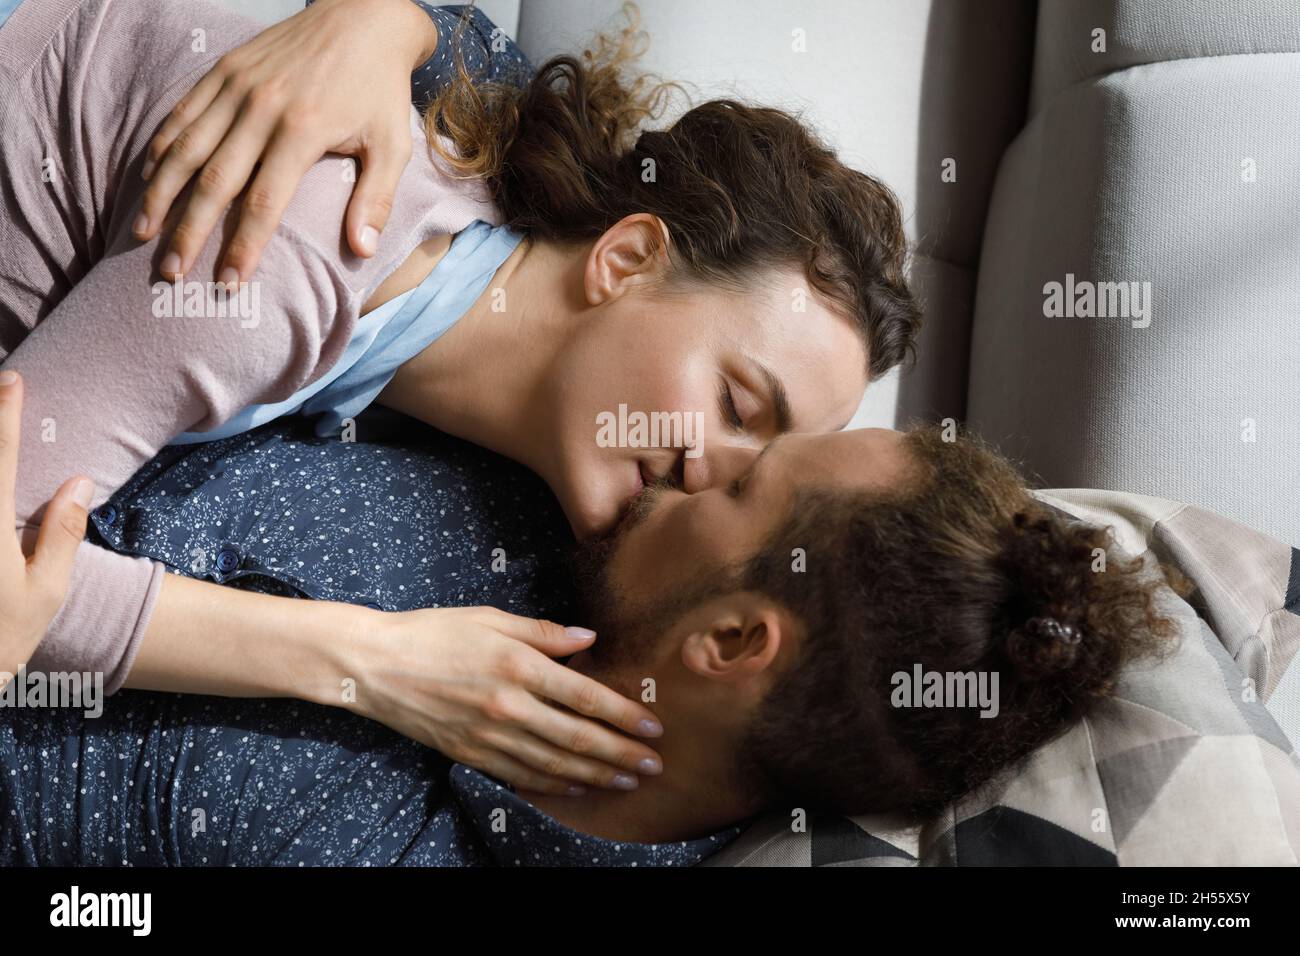 Un couple affectueux s'embrasse, se repose sur un canapé. Banque D'Images